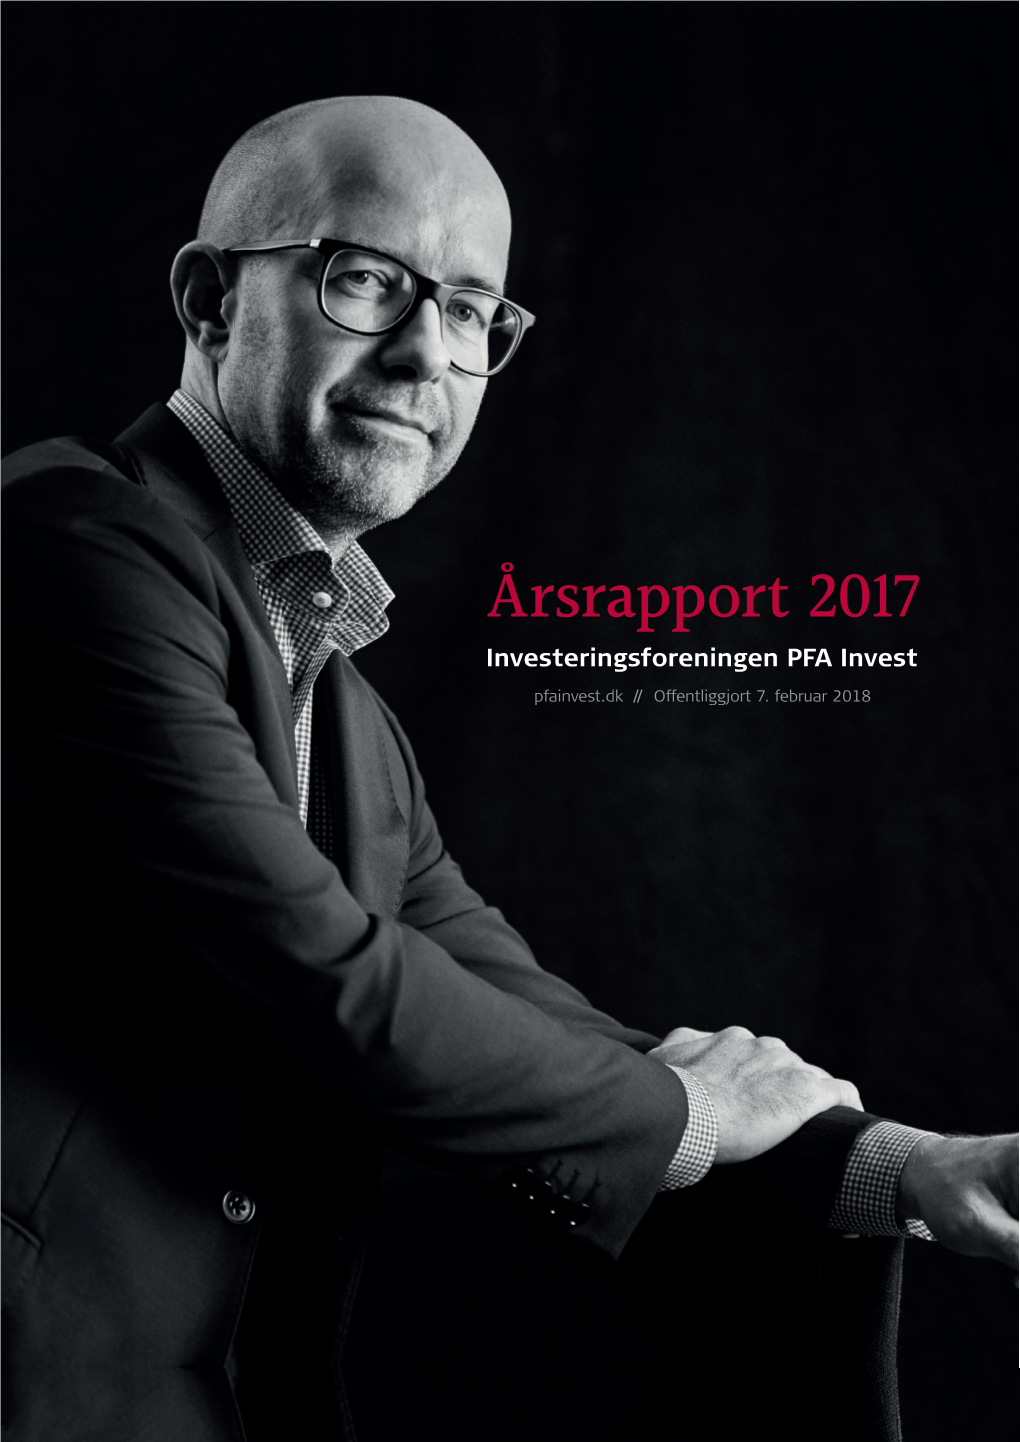 Årsrapport 2017 Investeringsforeningen PFA Invest